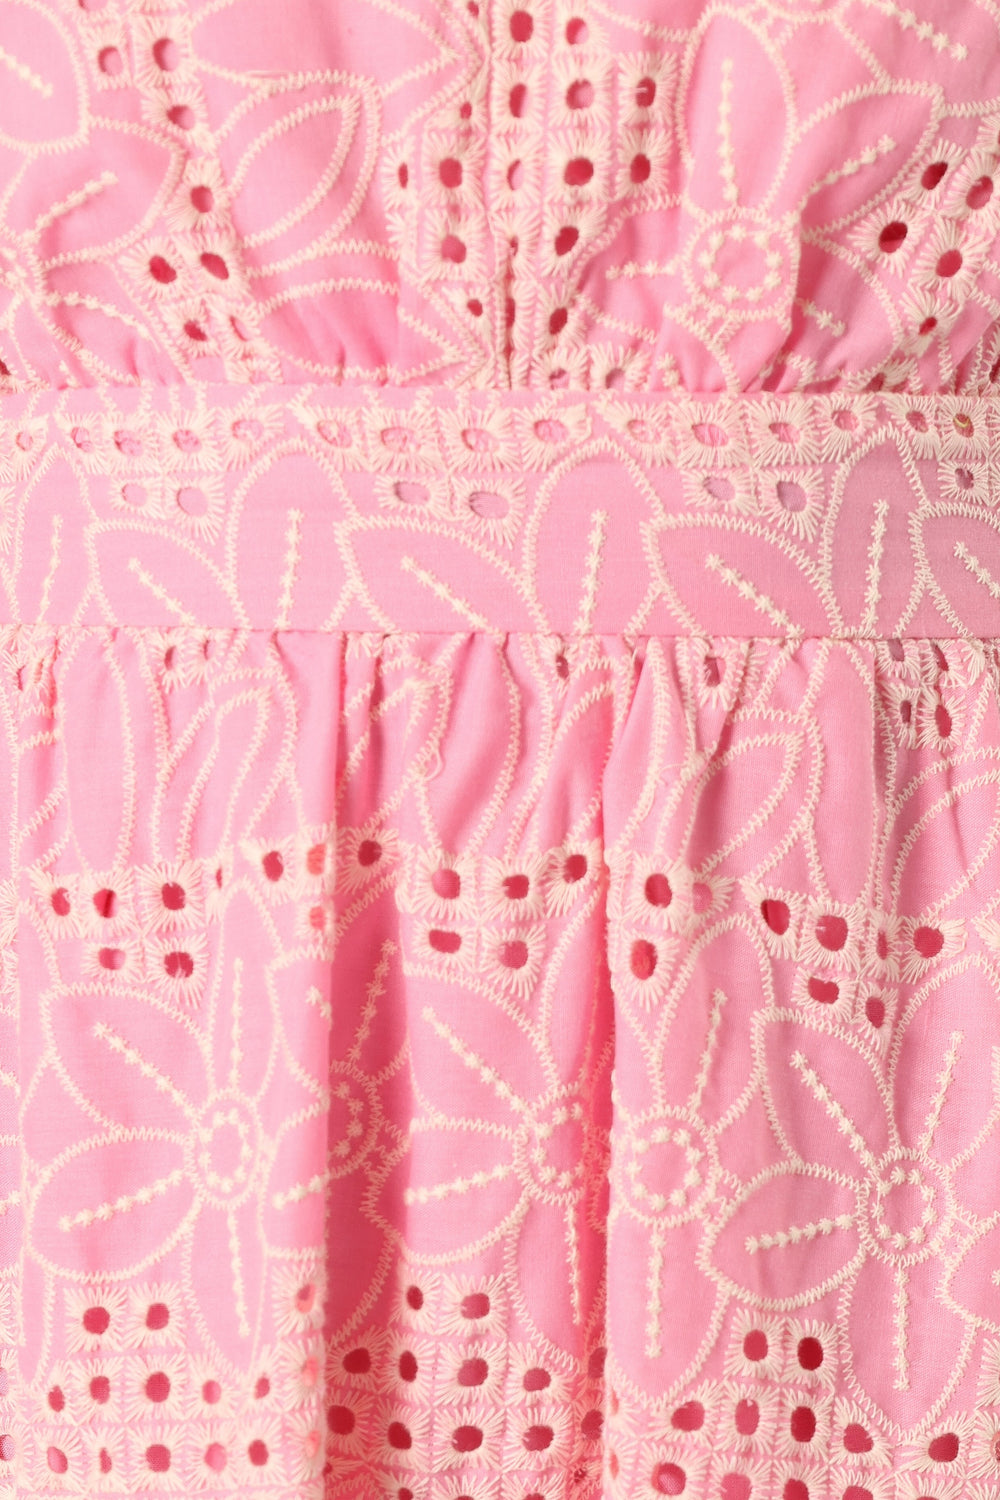 DRESSES @Cinderose One Shoulder Midi Dress - Pink